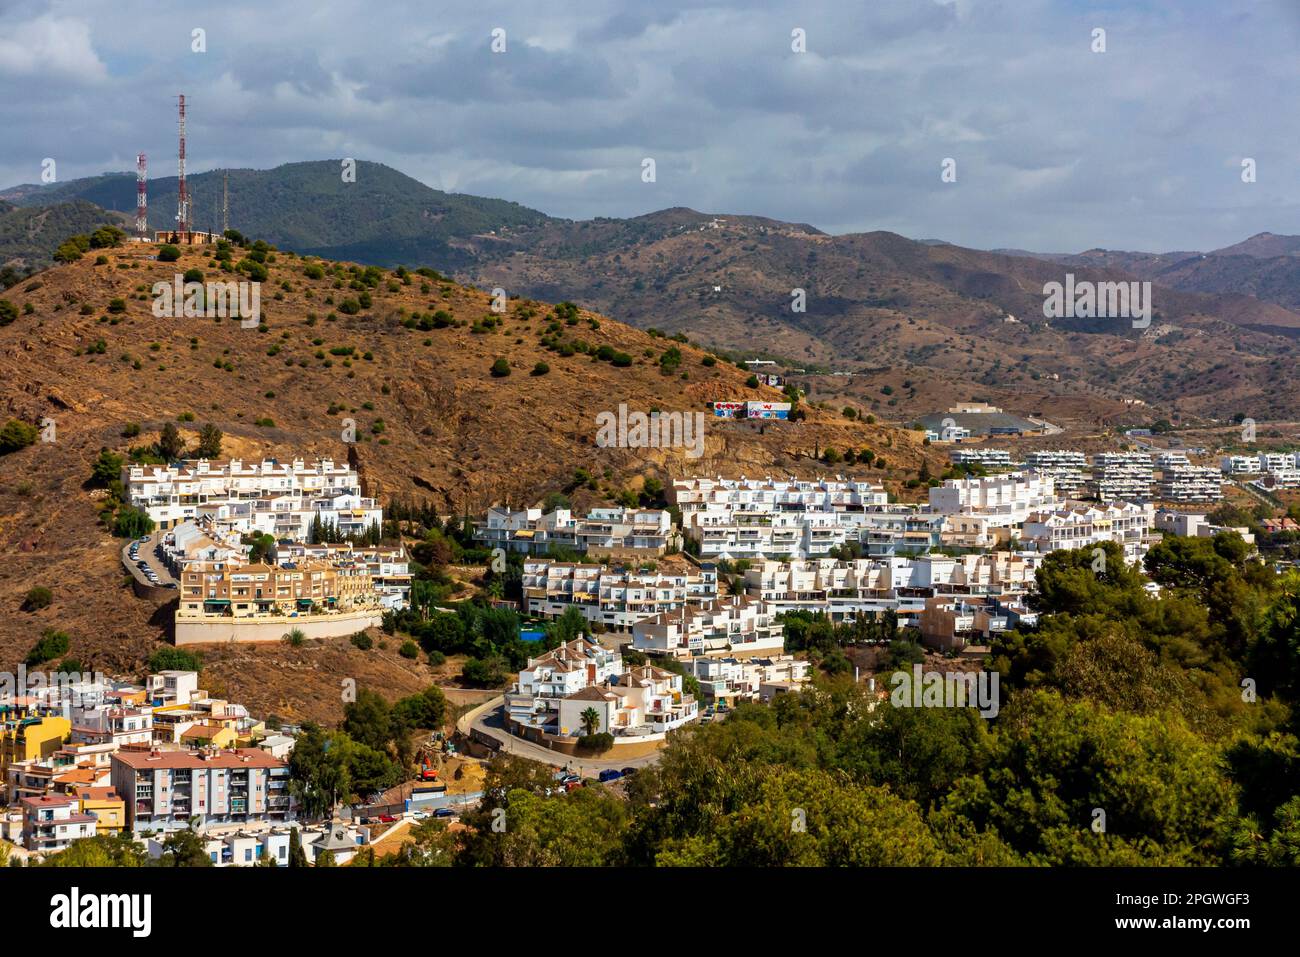 Blick auf Vorstadthäuser, Wohnungen und Gebäude in Malaga, einer großen Stadt in der Provinz Malaga, Andalusien, Südspanien. Stockfoto